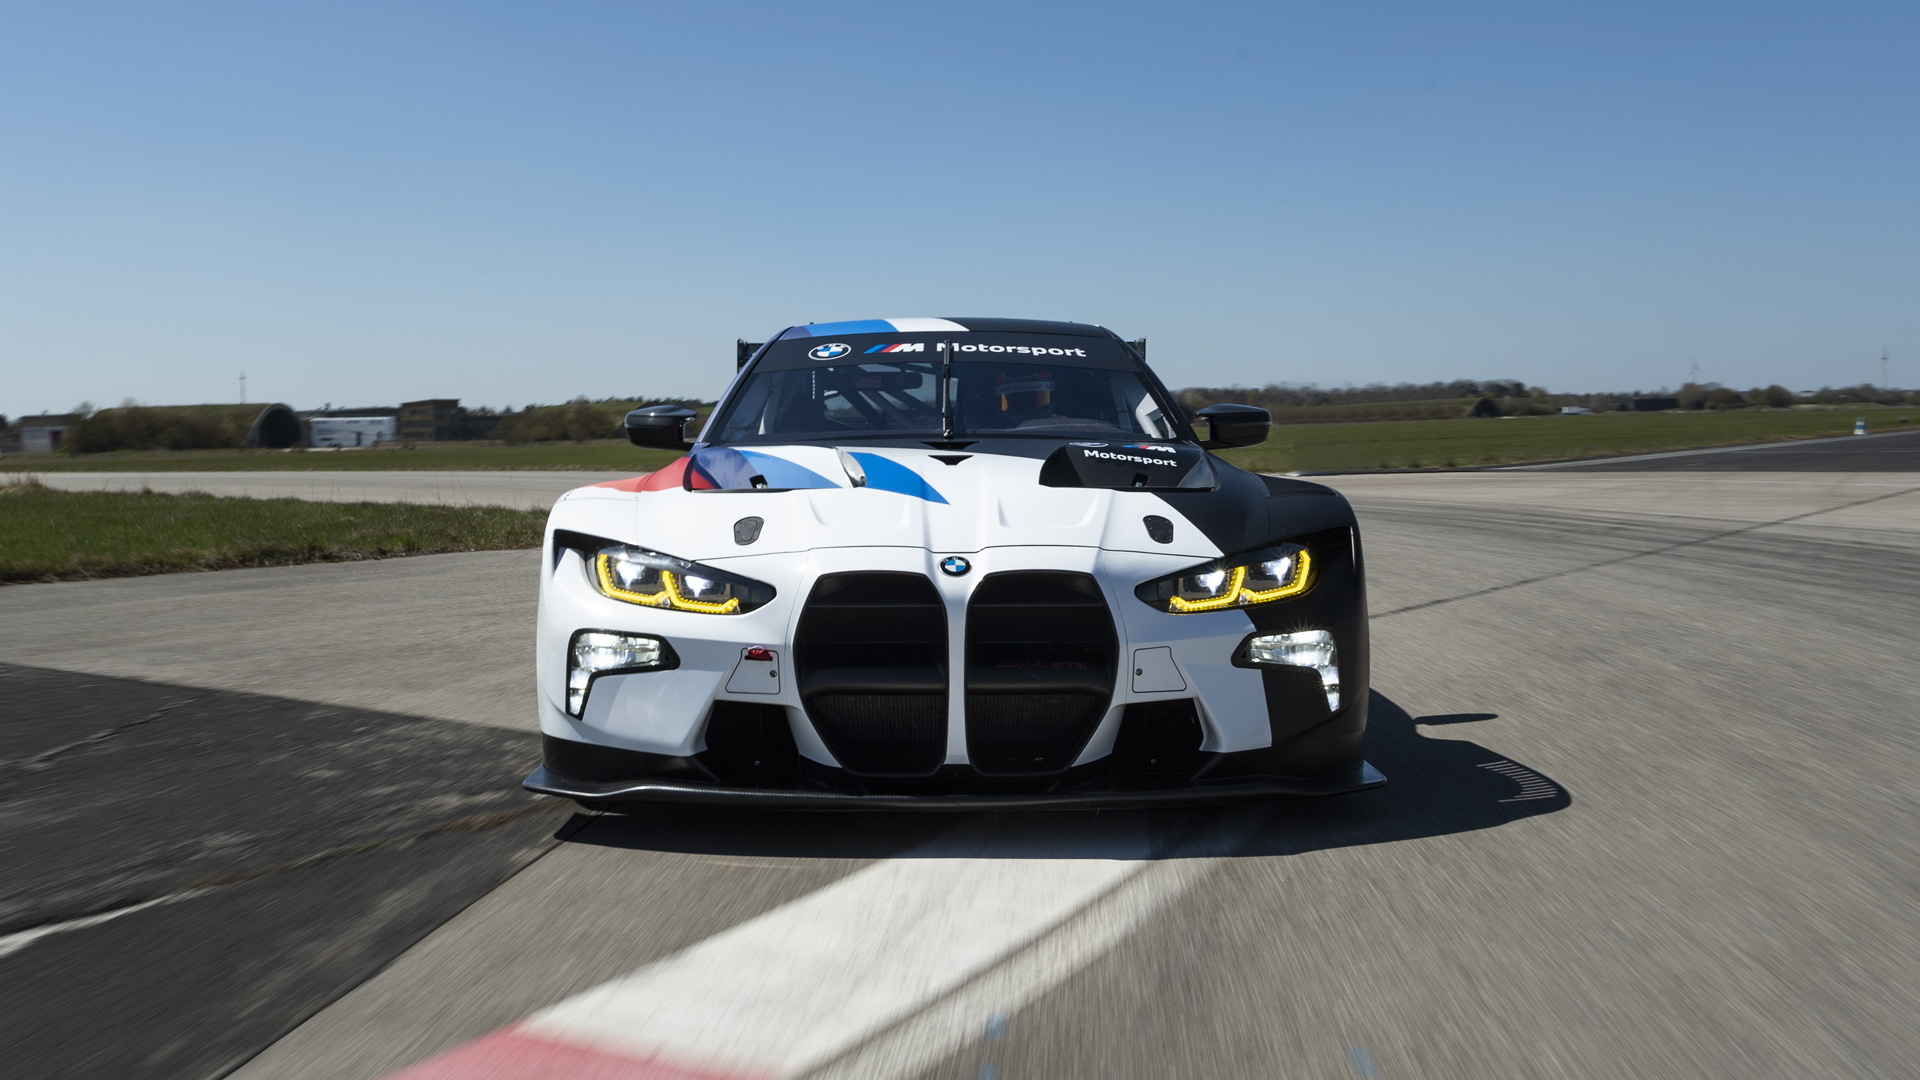 2022 BMW M4 GT3 race car